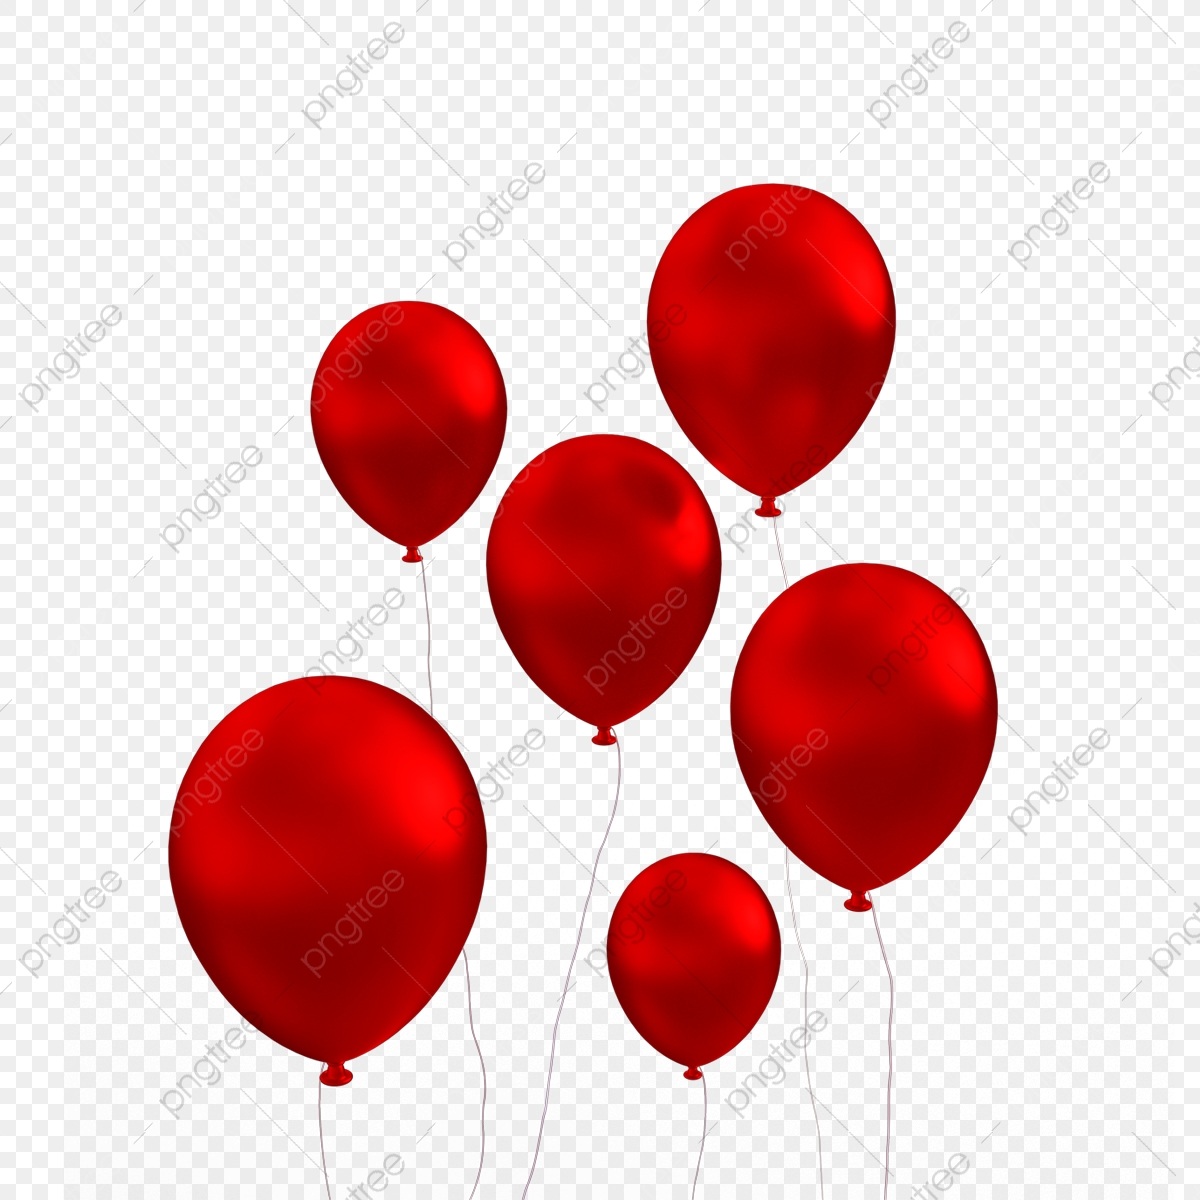 Видео красных шаров. Шарики на белом фоне. Красный воздушный шарик. Шары без фона. Красный шарик на белом фоне.